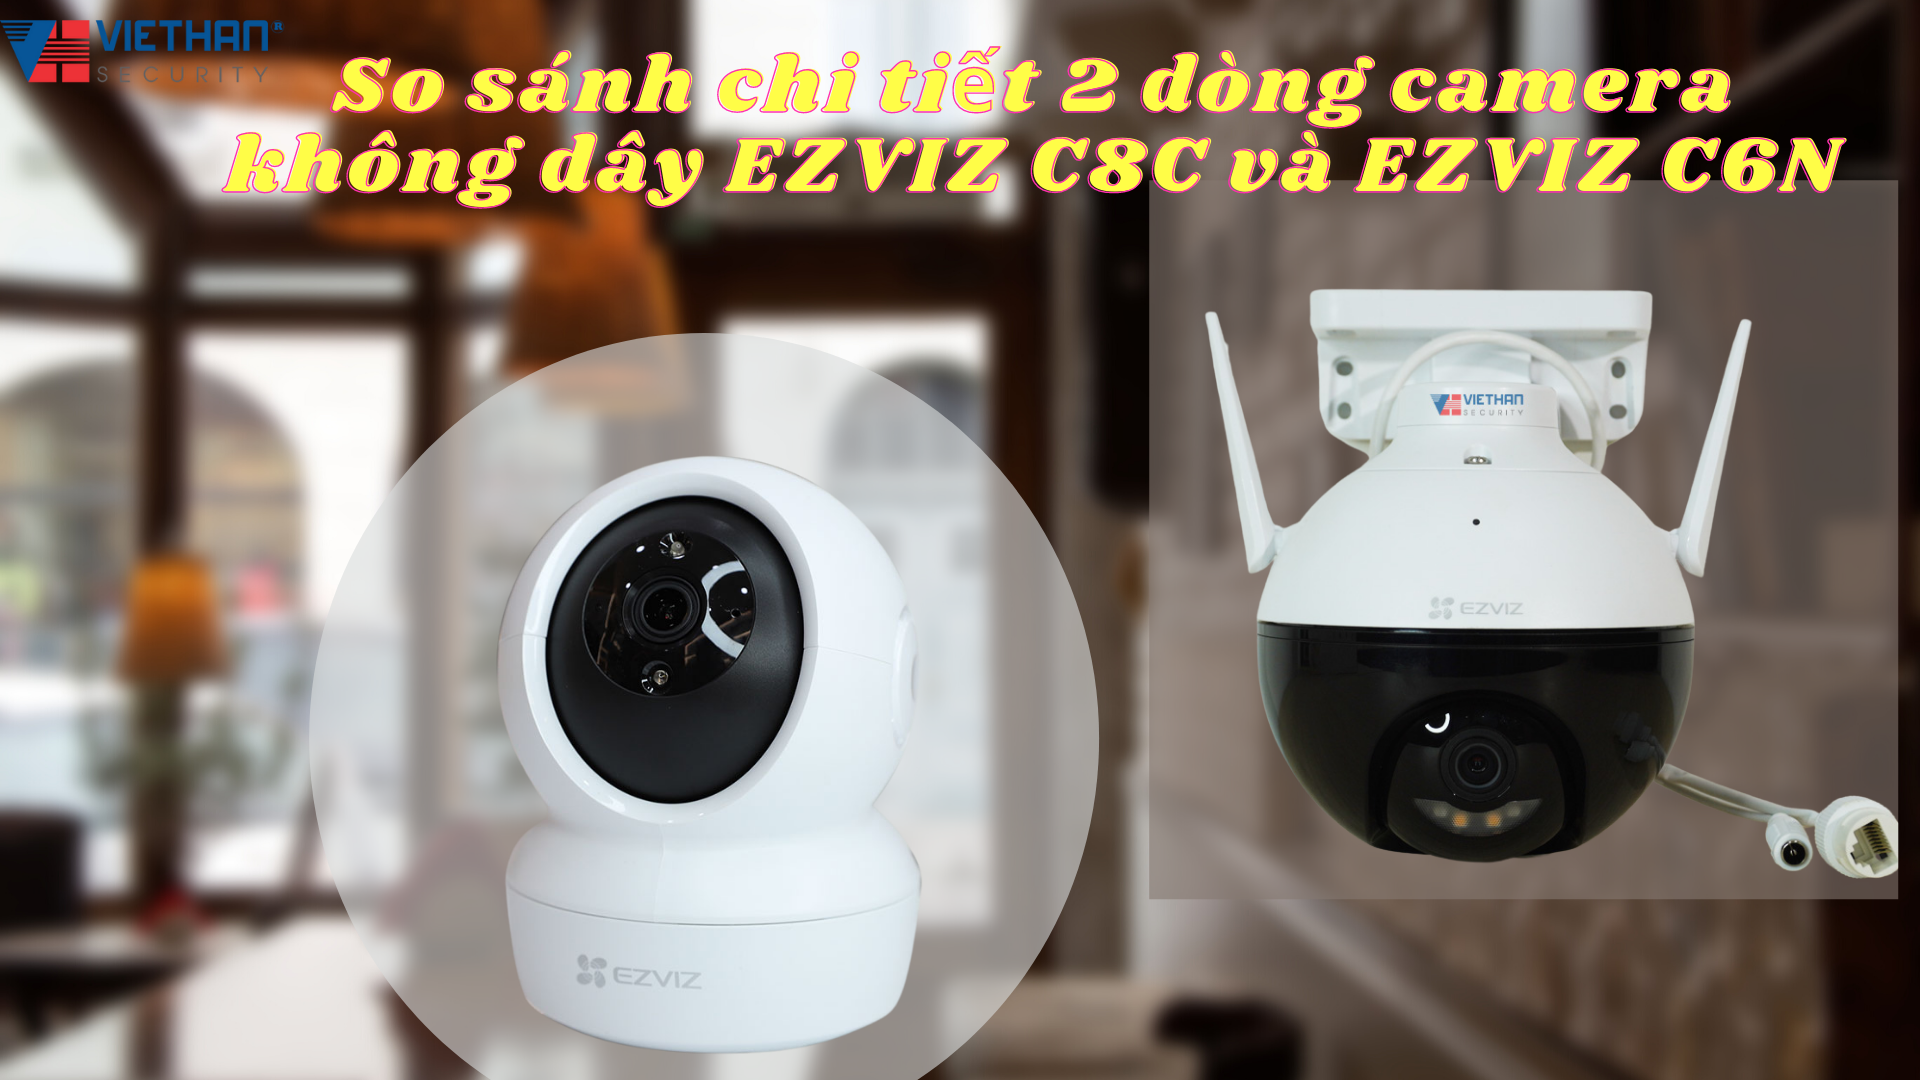 So sánh chi tiết 2 dòng camera không dây EZVIZ C8C và EZVIZ C6N